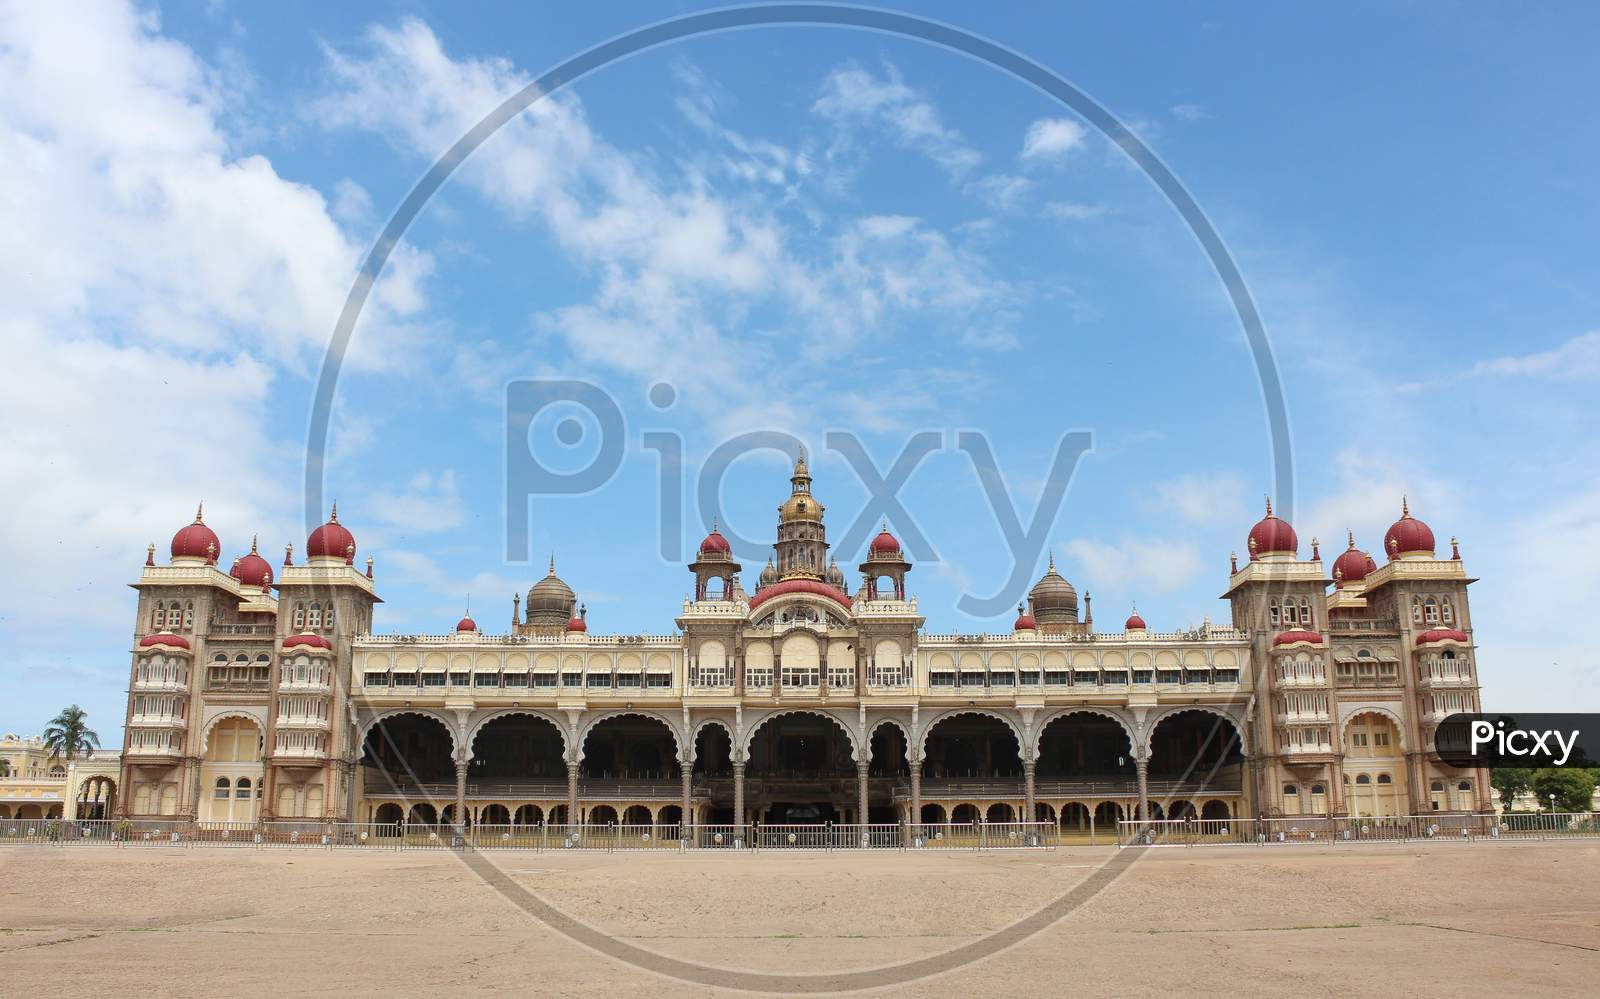 The Awesome Ambavilas Palace of Mysore / Karnataka.